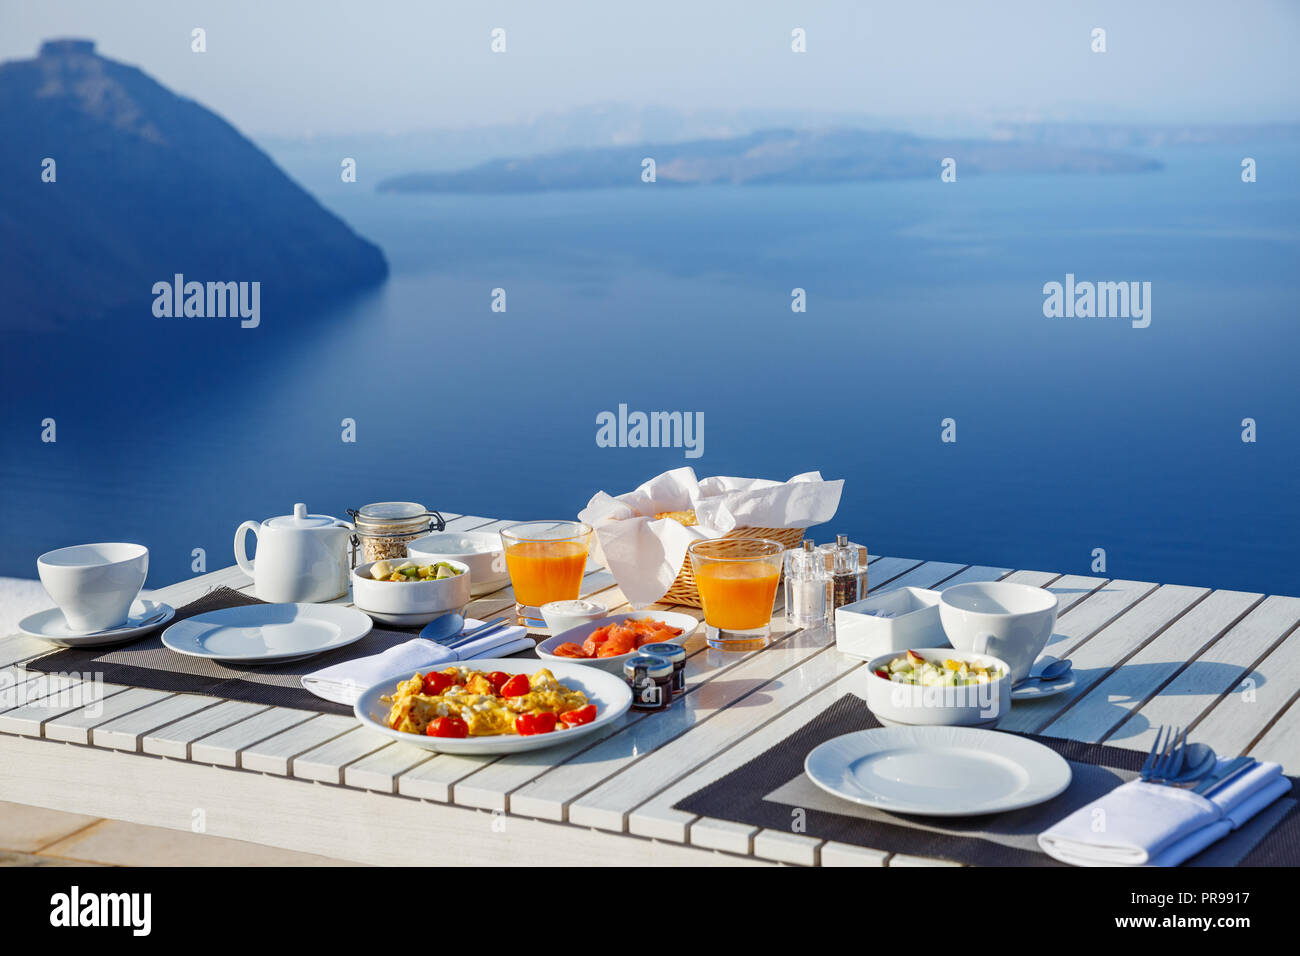 La colazione era fresca, in una splendida posizione con vista sul mare Foto Stock